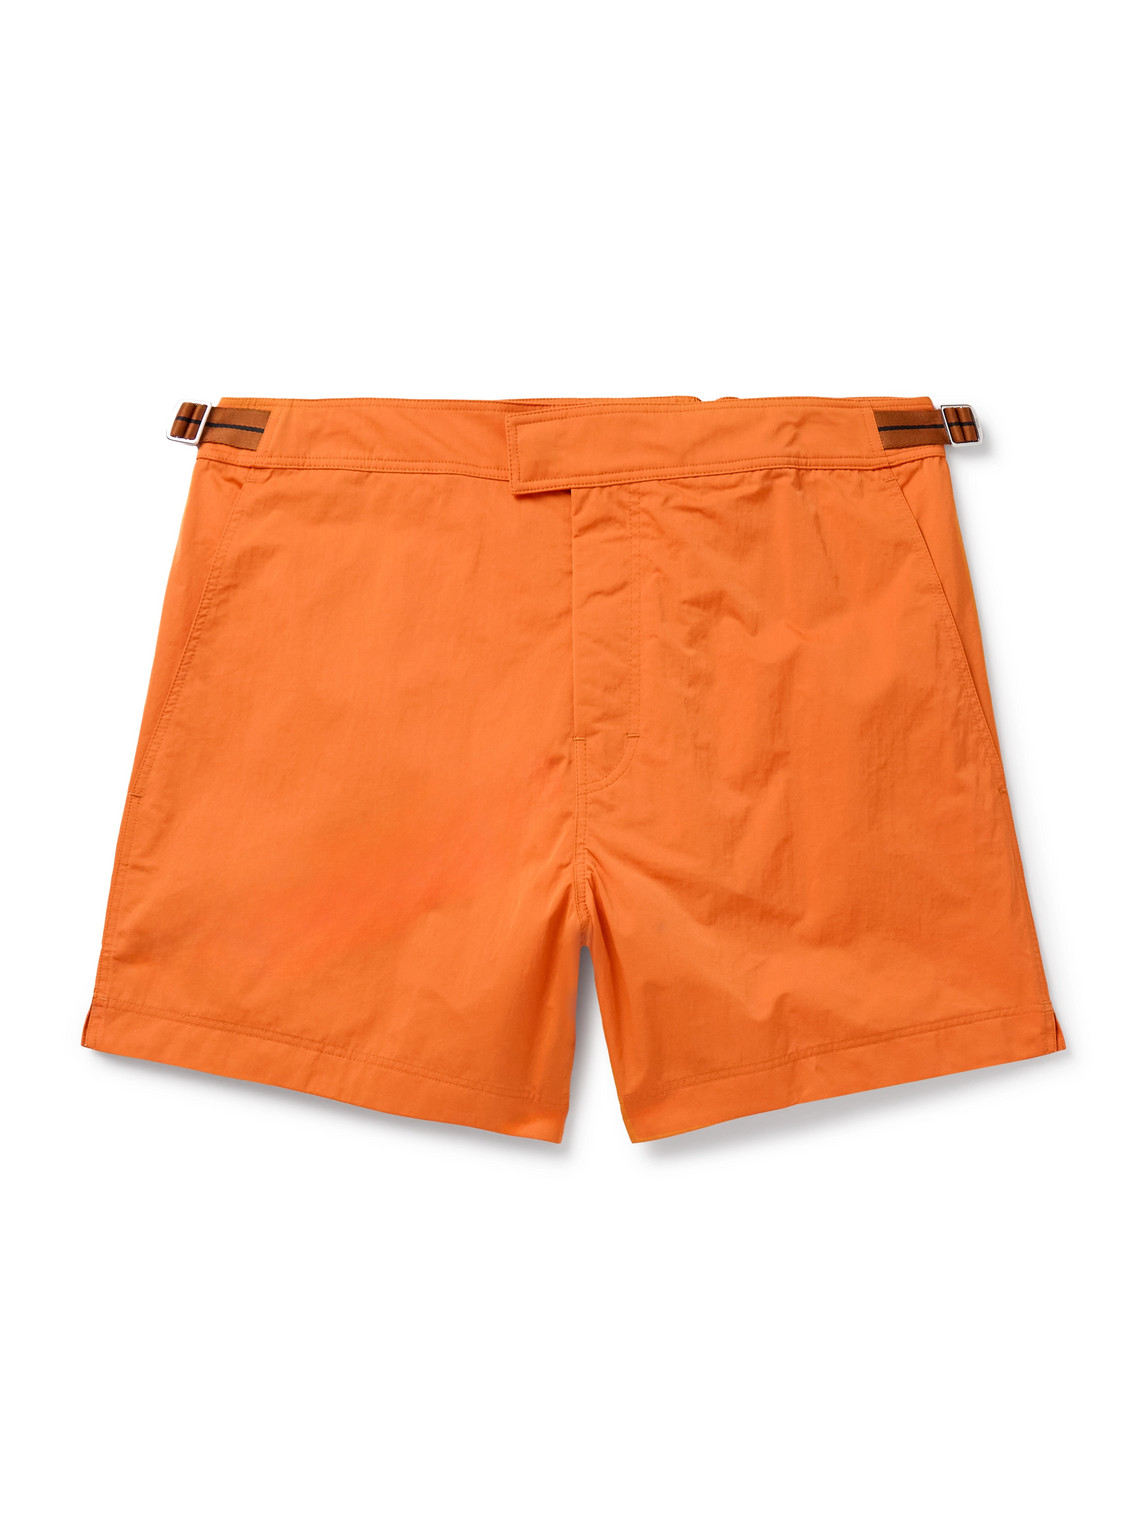 Zegna - Straight-Leg Mid-Length Swim Shorts - Men - Orange - M von Zegna